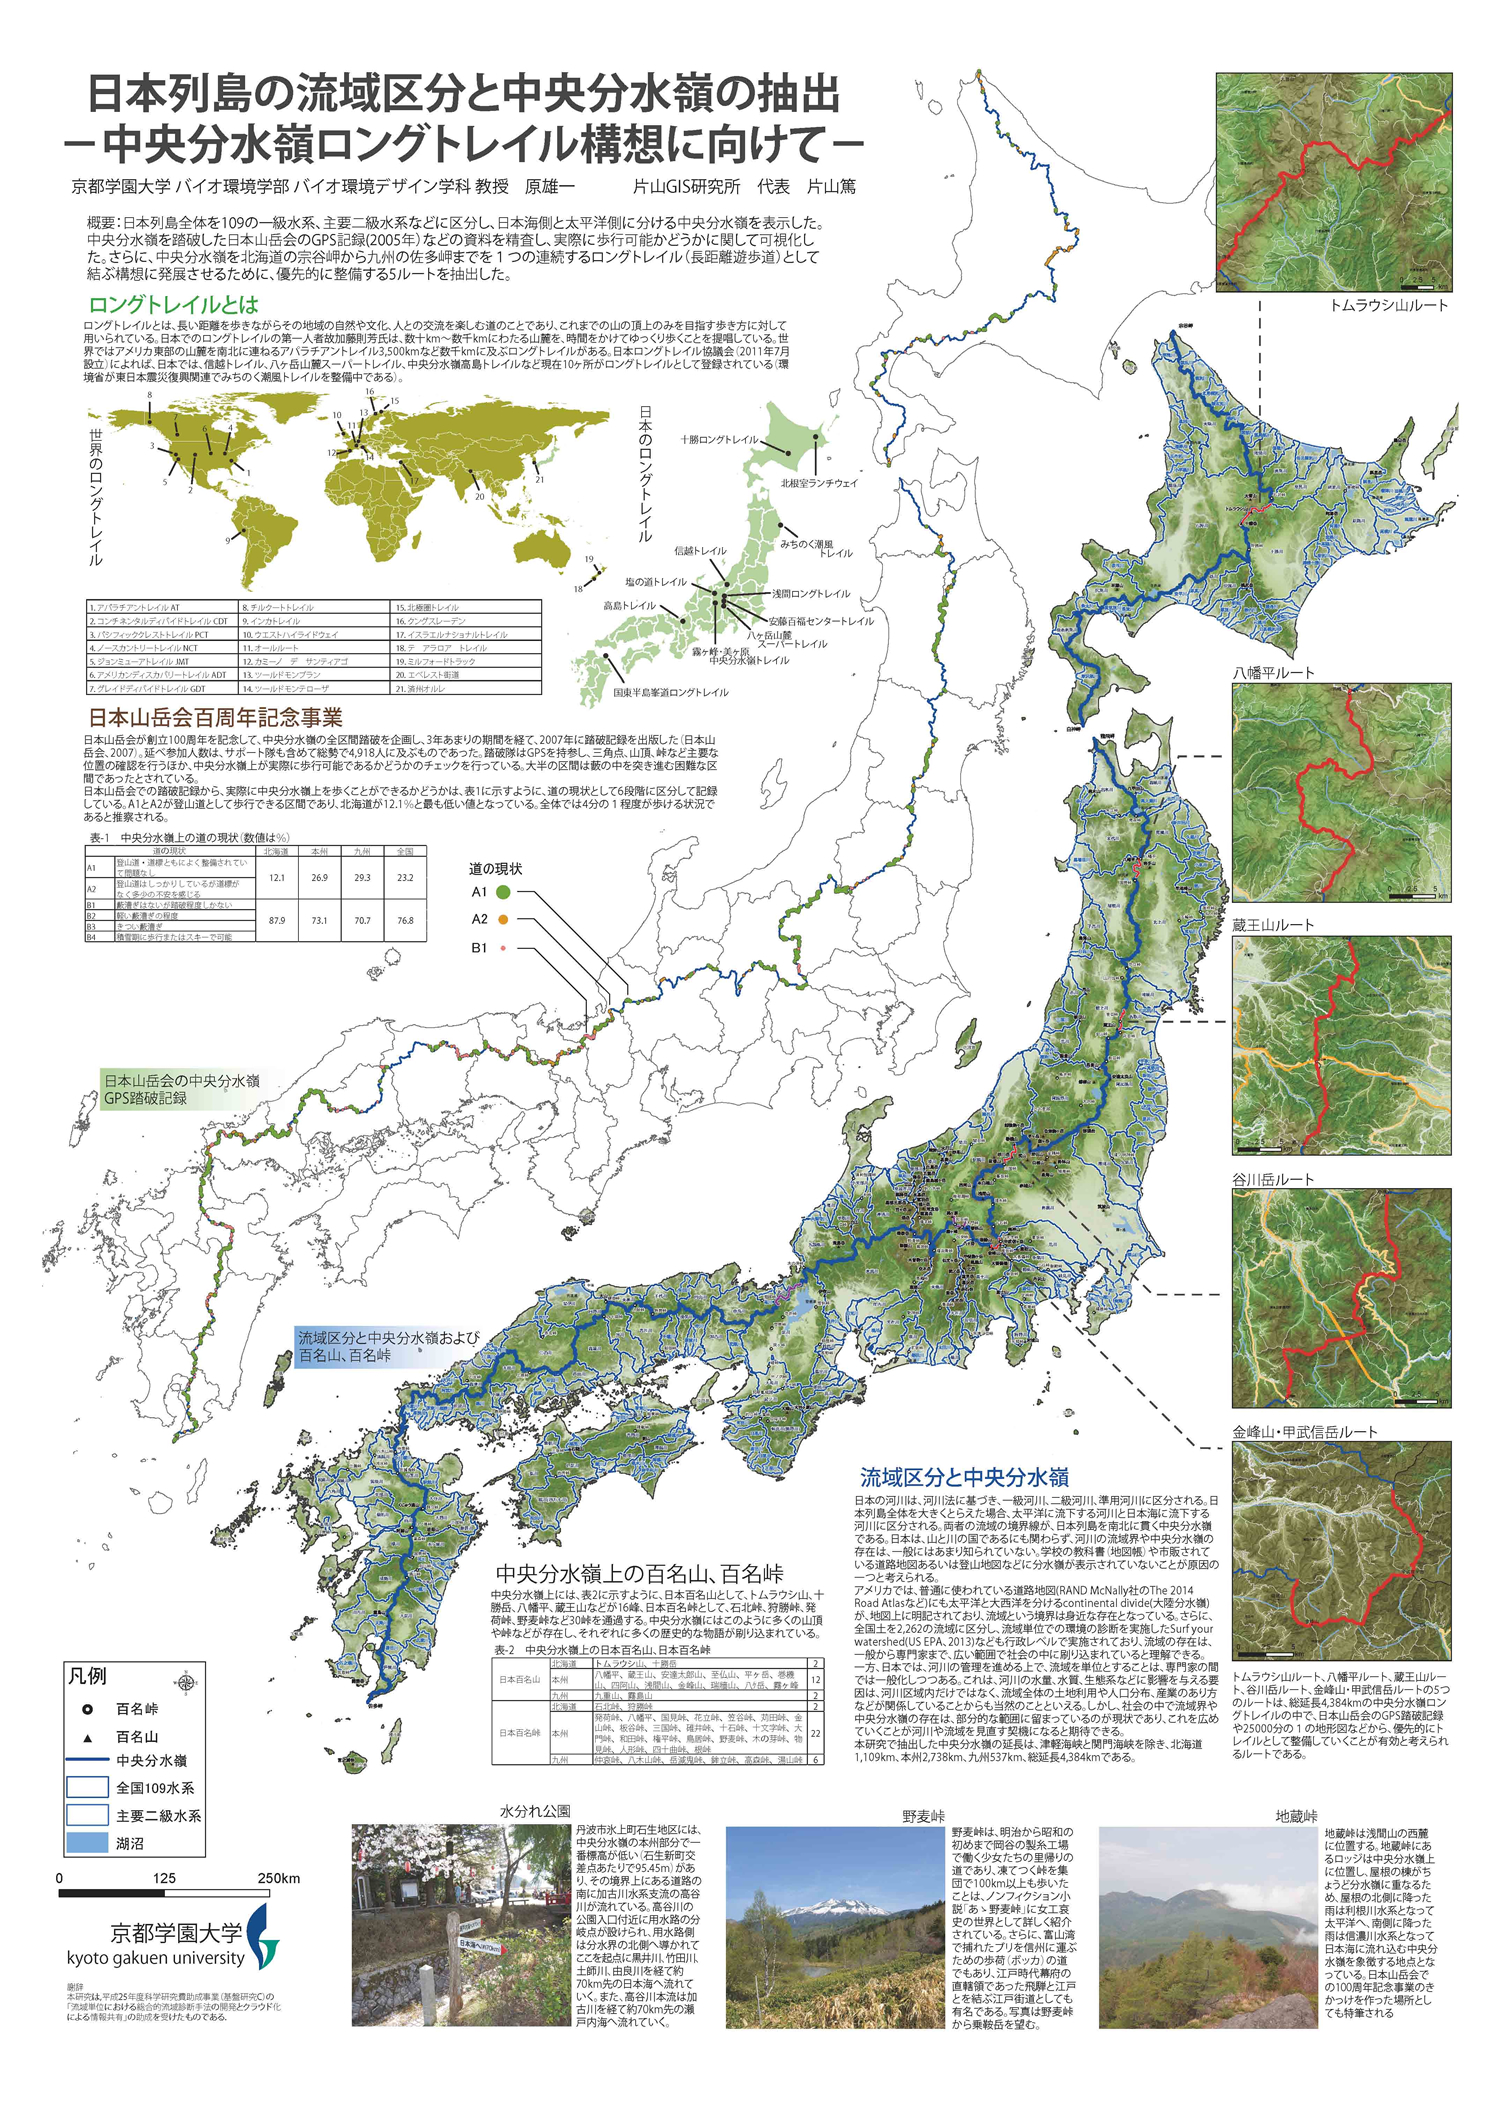 マップギャラリー14 第3位 日本列島の流域区分と中央分水嶺の抽出 Esriジャパン